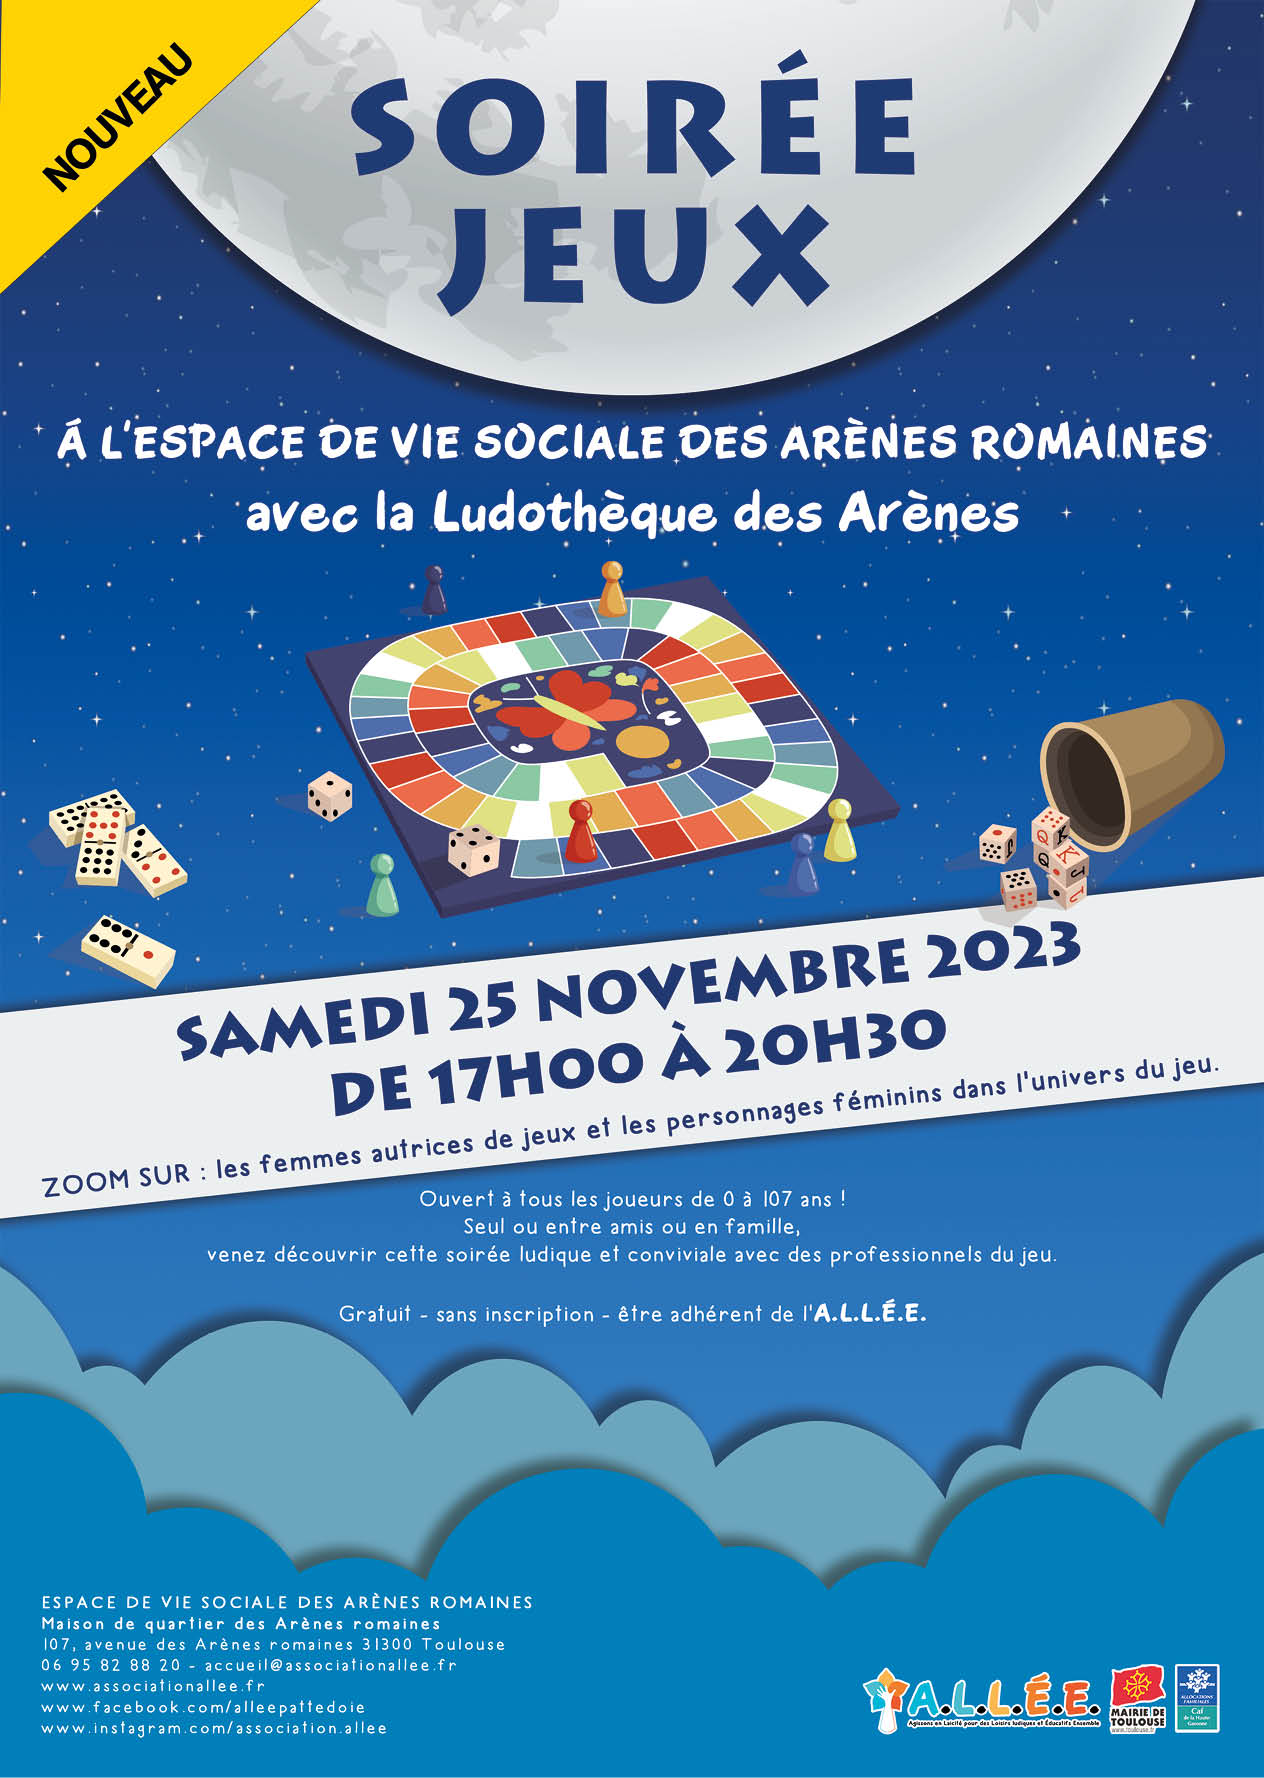 Une soirée jeux de société sur le climat à Rouen : un rendez-vous